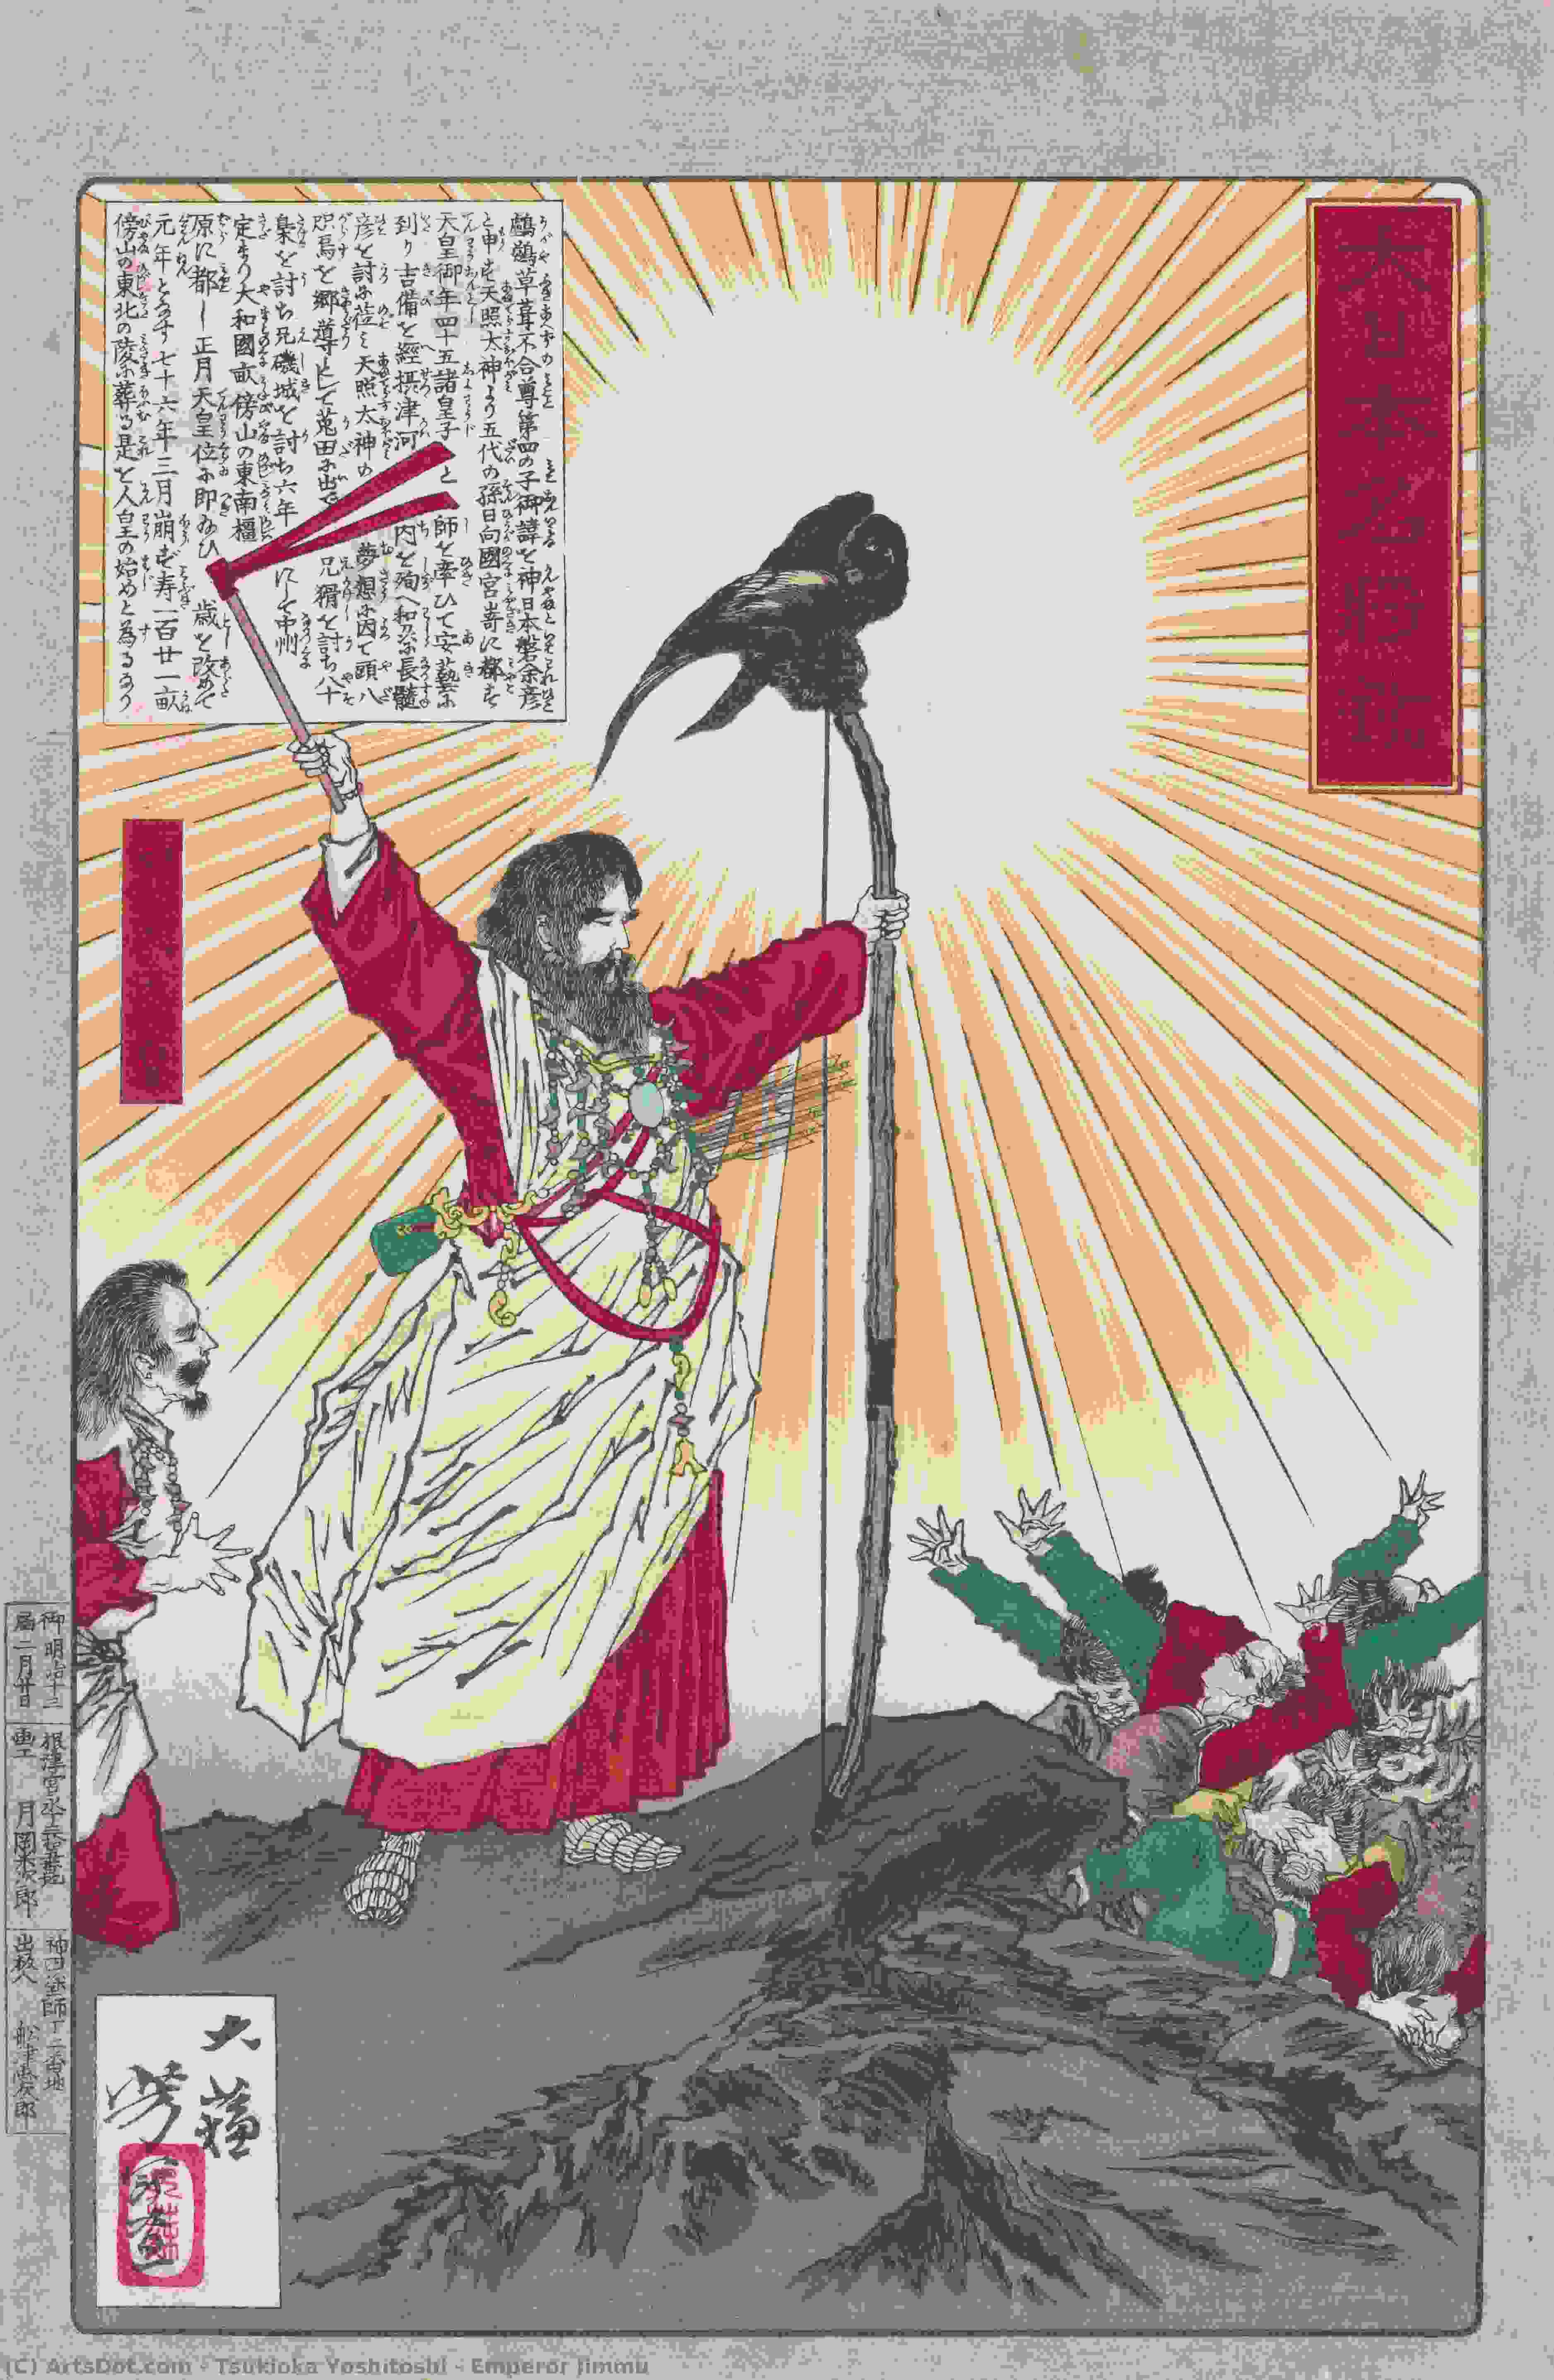 WikiOO.org - Güzel Sanatlar Ansiklopedisi - Resim, Resimler Tsukioka Yoshitoshi - Emperor Jimmu